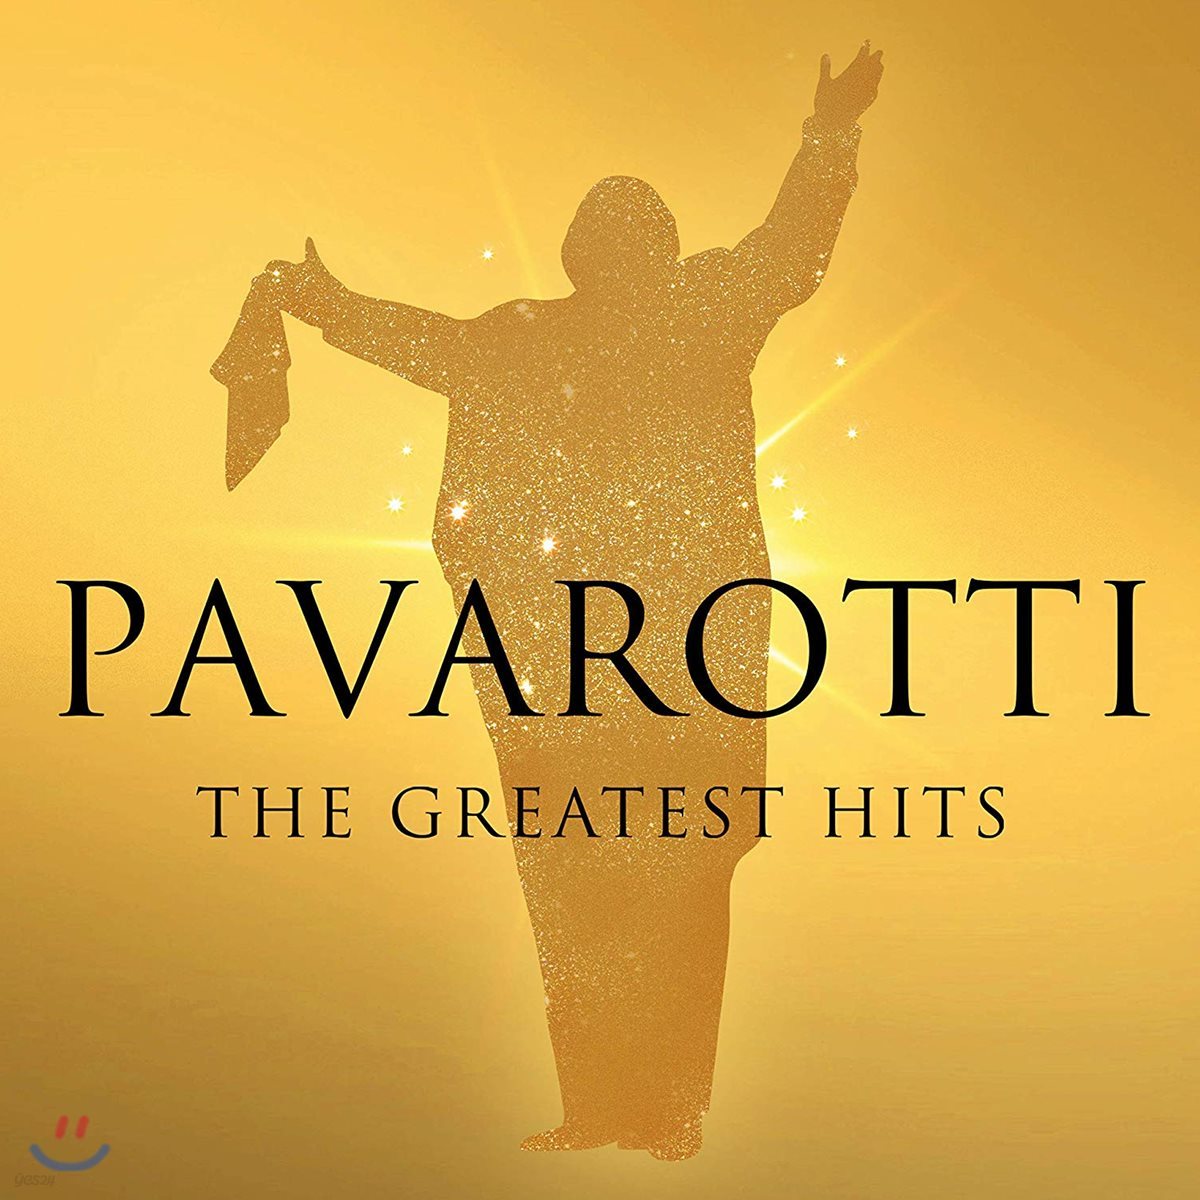 루치아노 파바로티 베스트 앨범 (Luciano Pavarotti - The Greatest Hits)